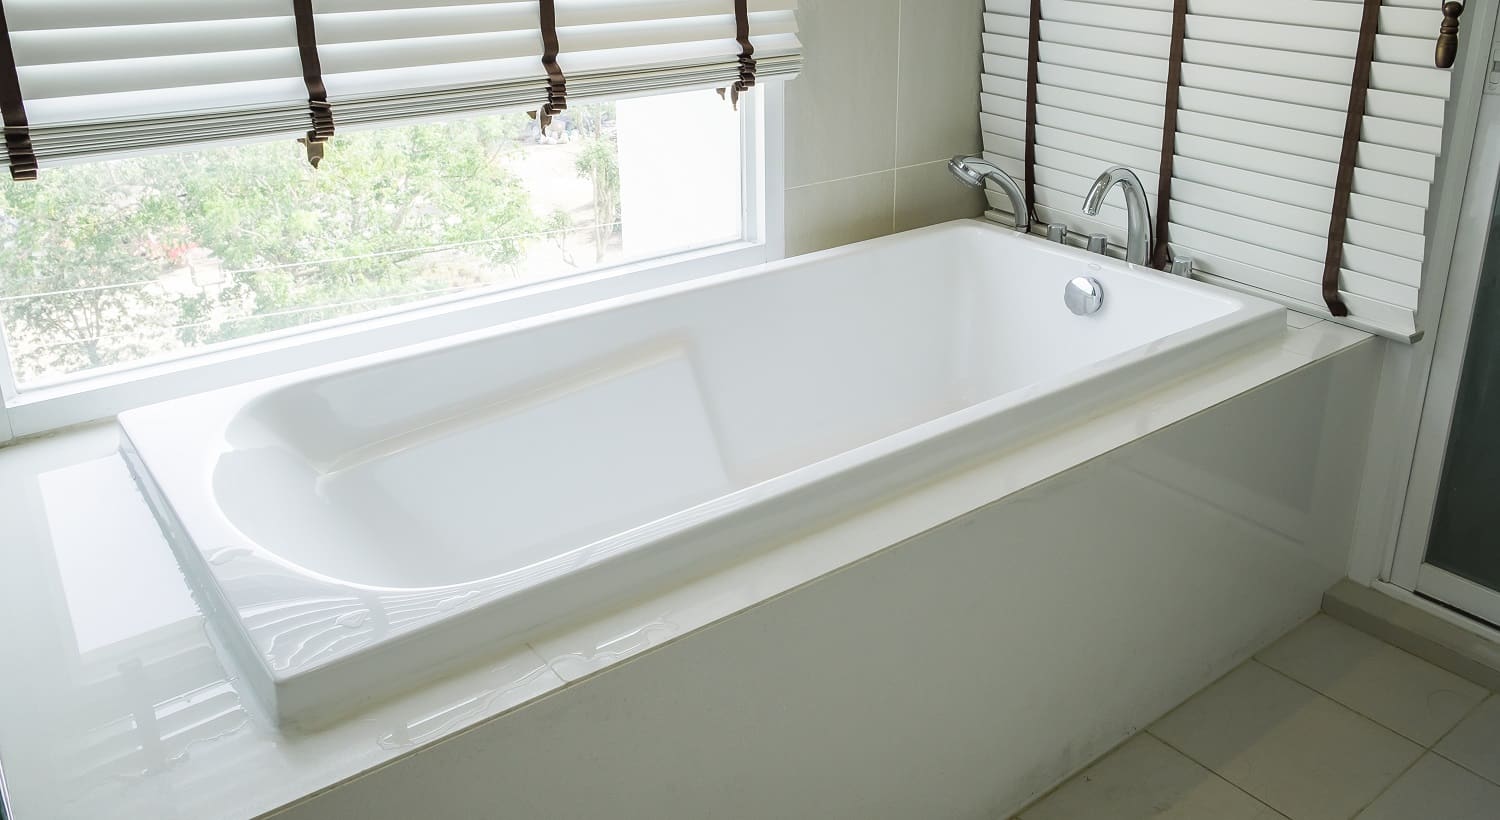 Bathtub white ceramic interior luxury in bathroom